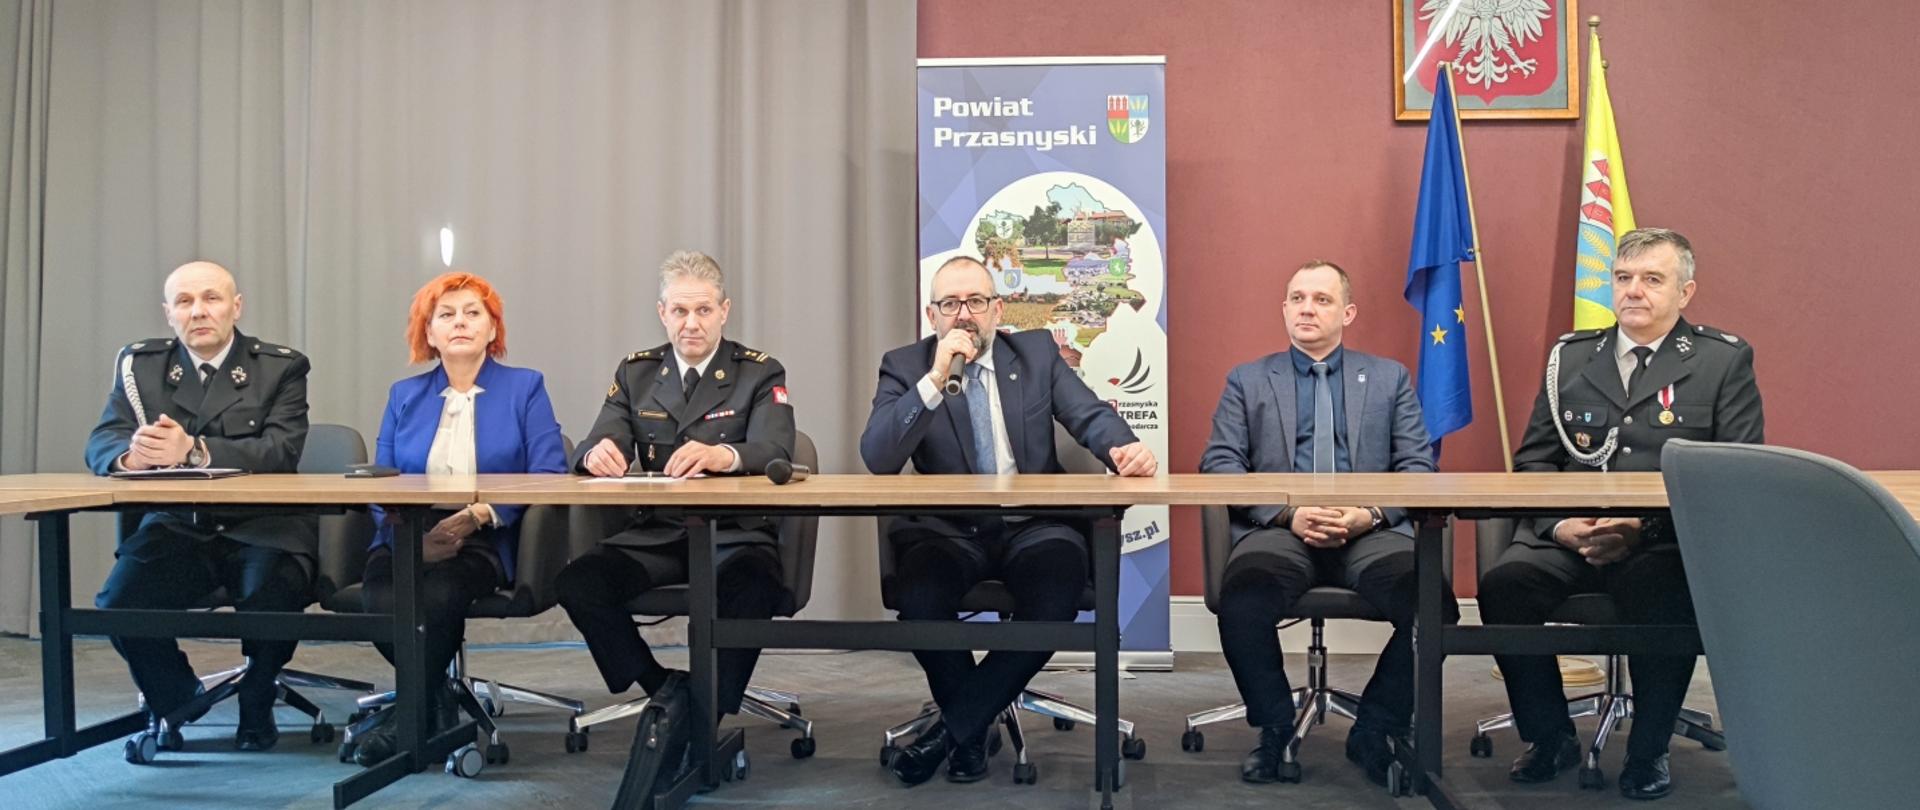 Na zdjęciu od lewej: prezes OSP Mchowo, wójt gminy Przasnysz, zastępca komendanta powiatowego PSP w Przasnyszu, starosta przasnyski, wójt gminy Krasne, prezes OSP Krasne